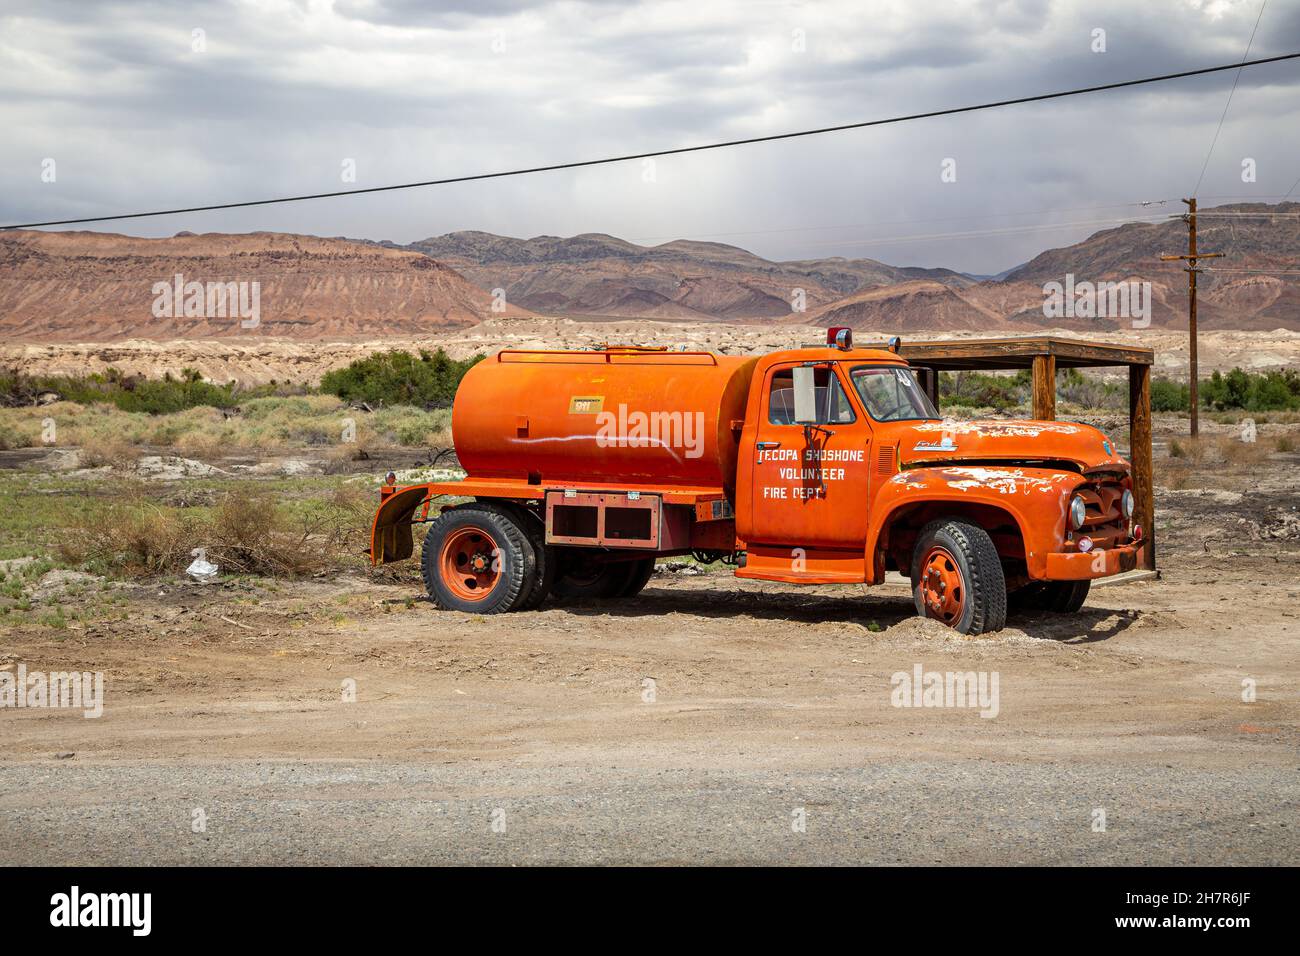 SHOSHONE VILLAGE, STATI UNITI d'AMERICA - 22 maggio 2015: Abbandonato vintage camion fuoco seduto sul deserto fuori del villaggio di Shoshone, vicino Death Valley in C. Foto Stock